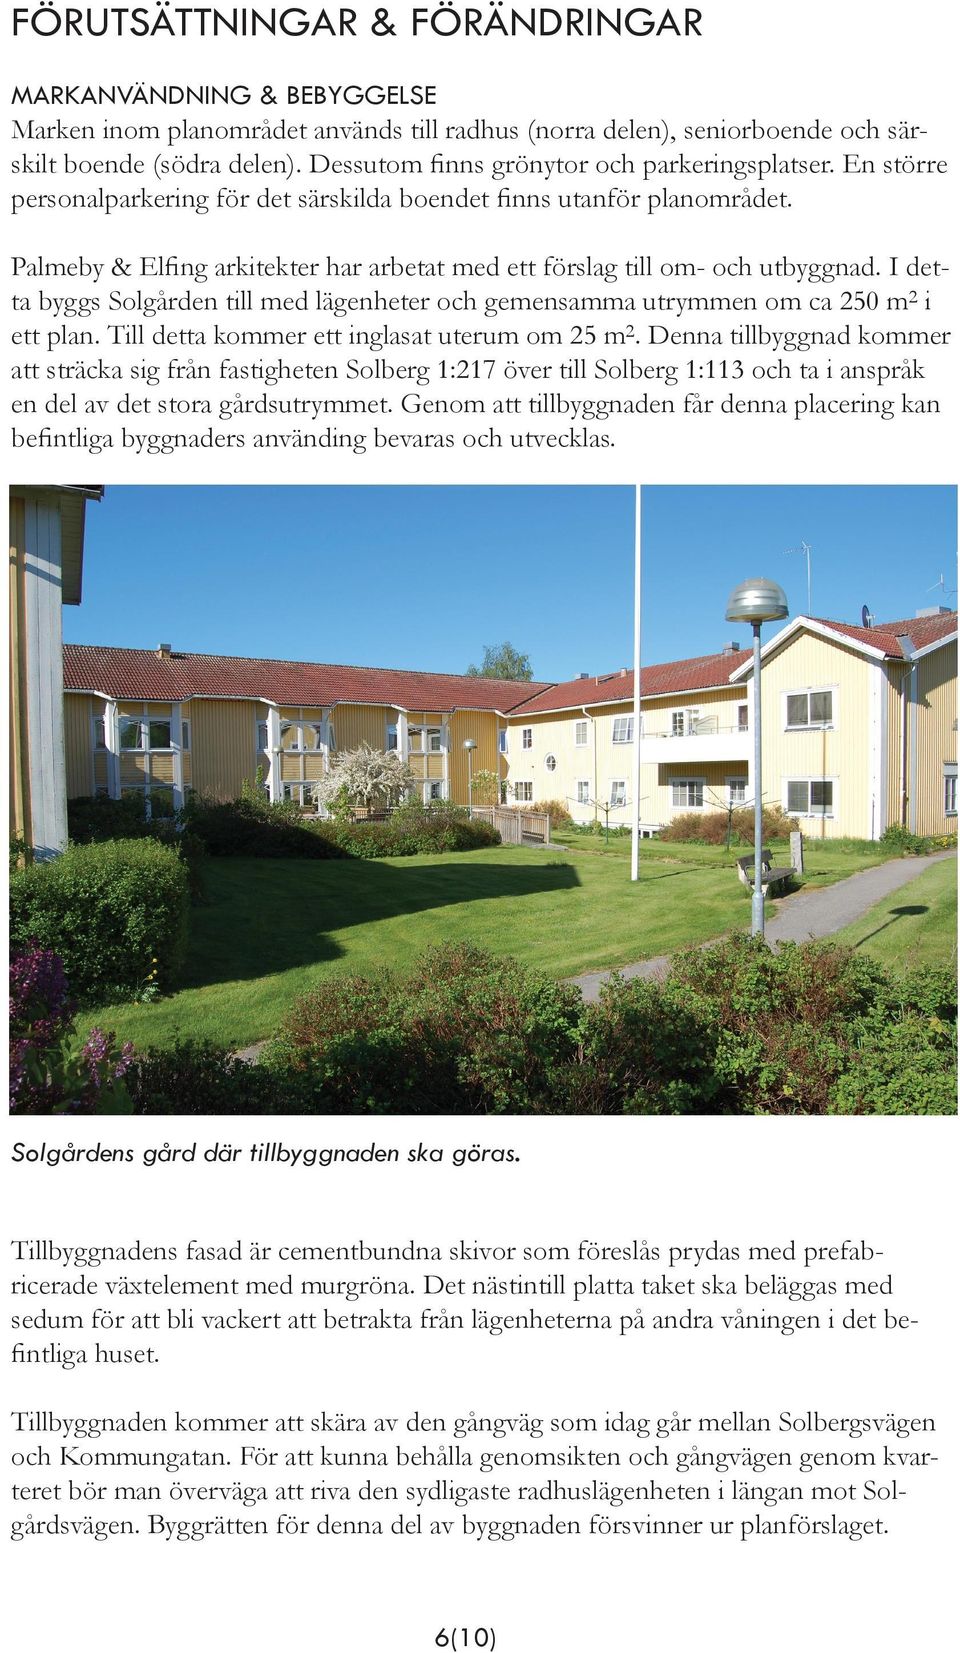 Palmeby & Elfing arkitekter har arbetat med ett förslag till om- och utbyggnad. I detta byggs Solgården till med lägenheter och gemensamma utrymmen om ca 250 m2 i ett plan.